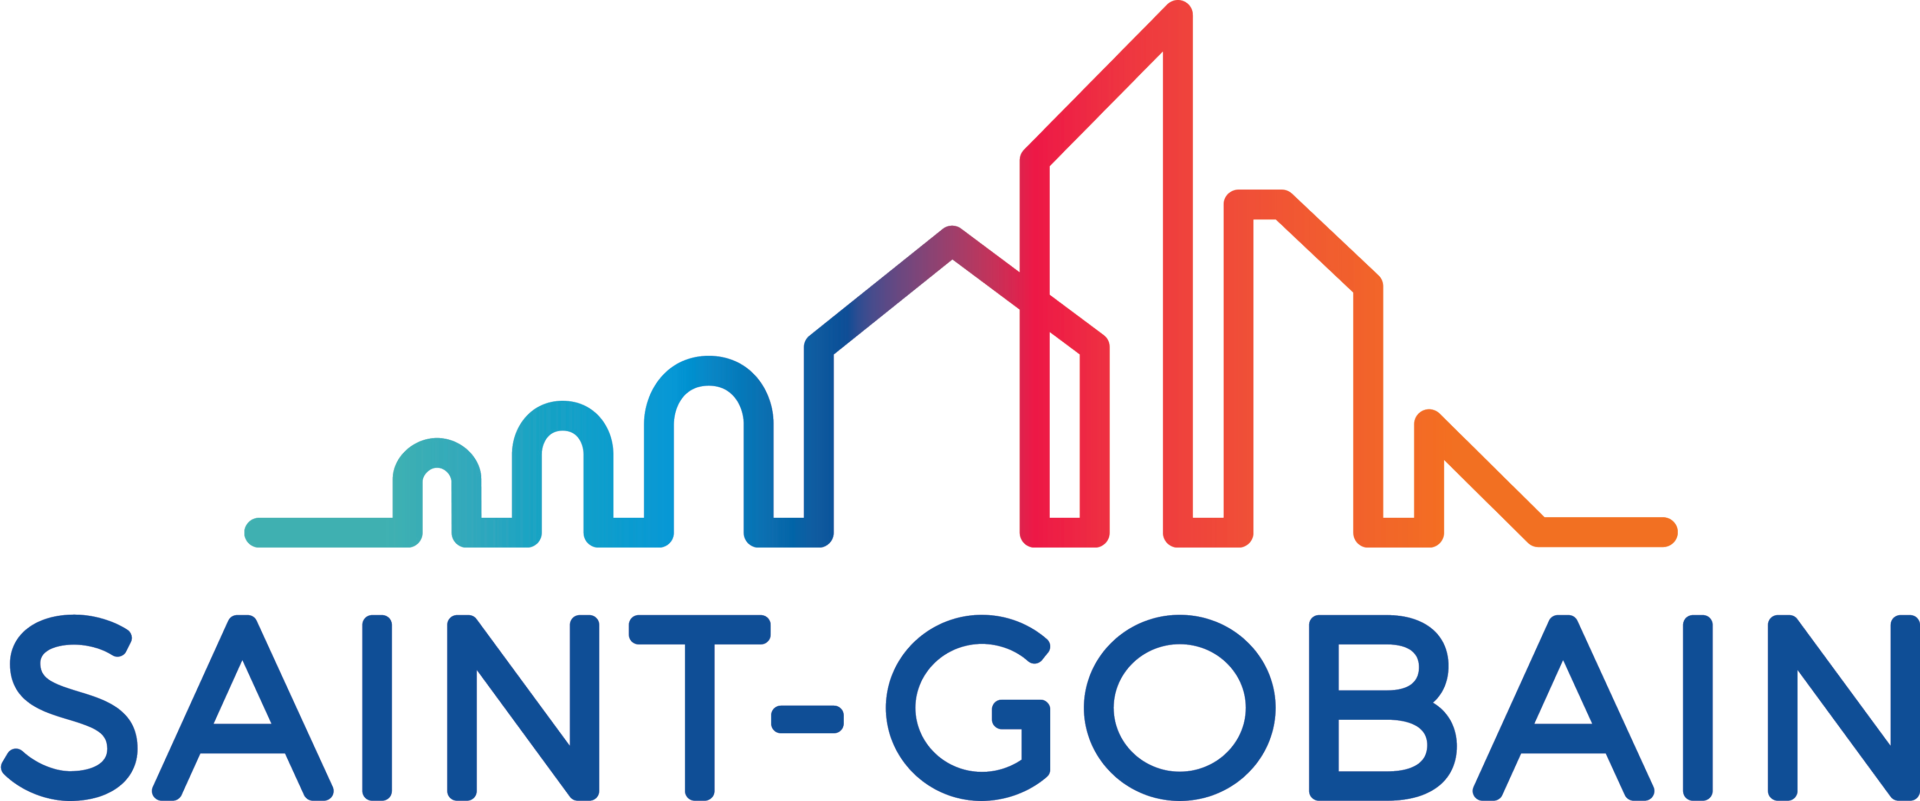 SAINT-GOBAIN obtém a certificação top employer global 2021 pelo sexto ano consecutivo